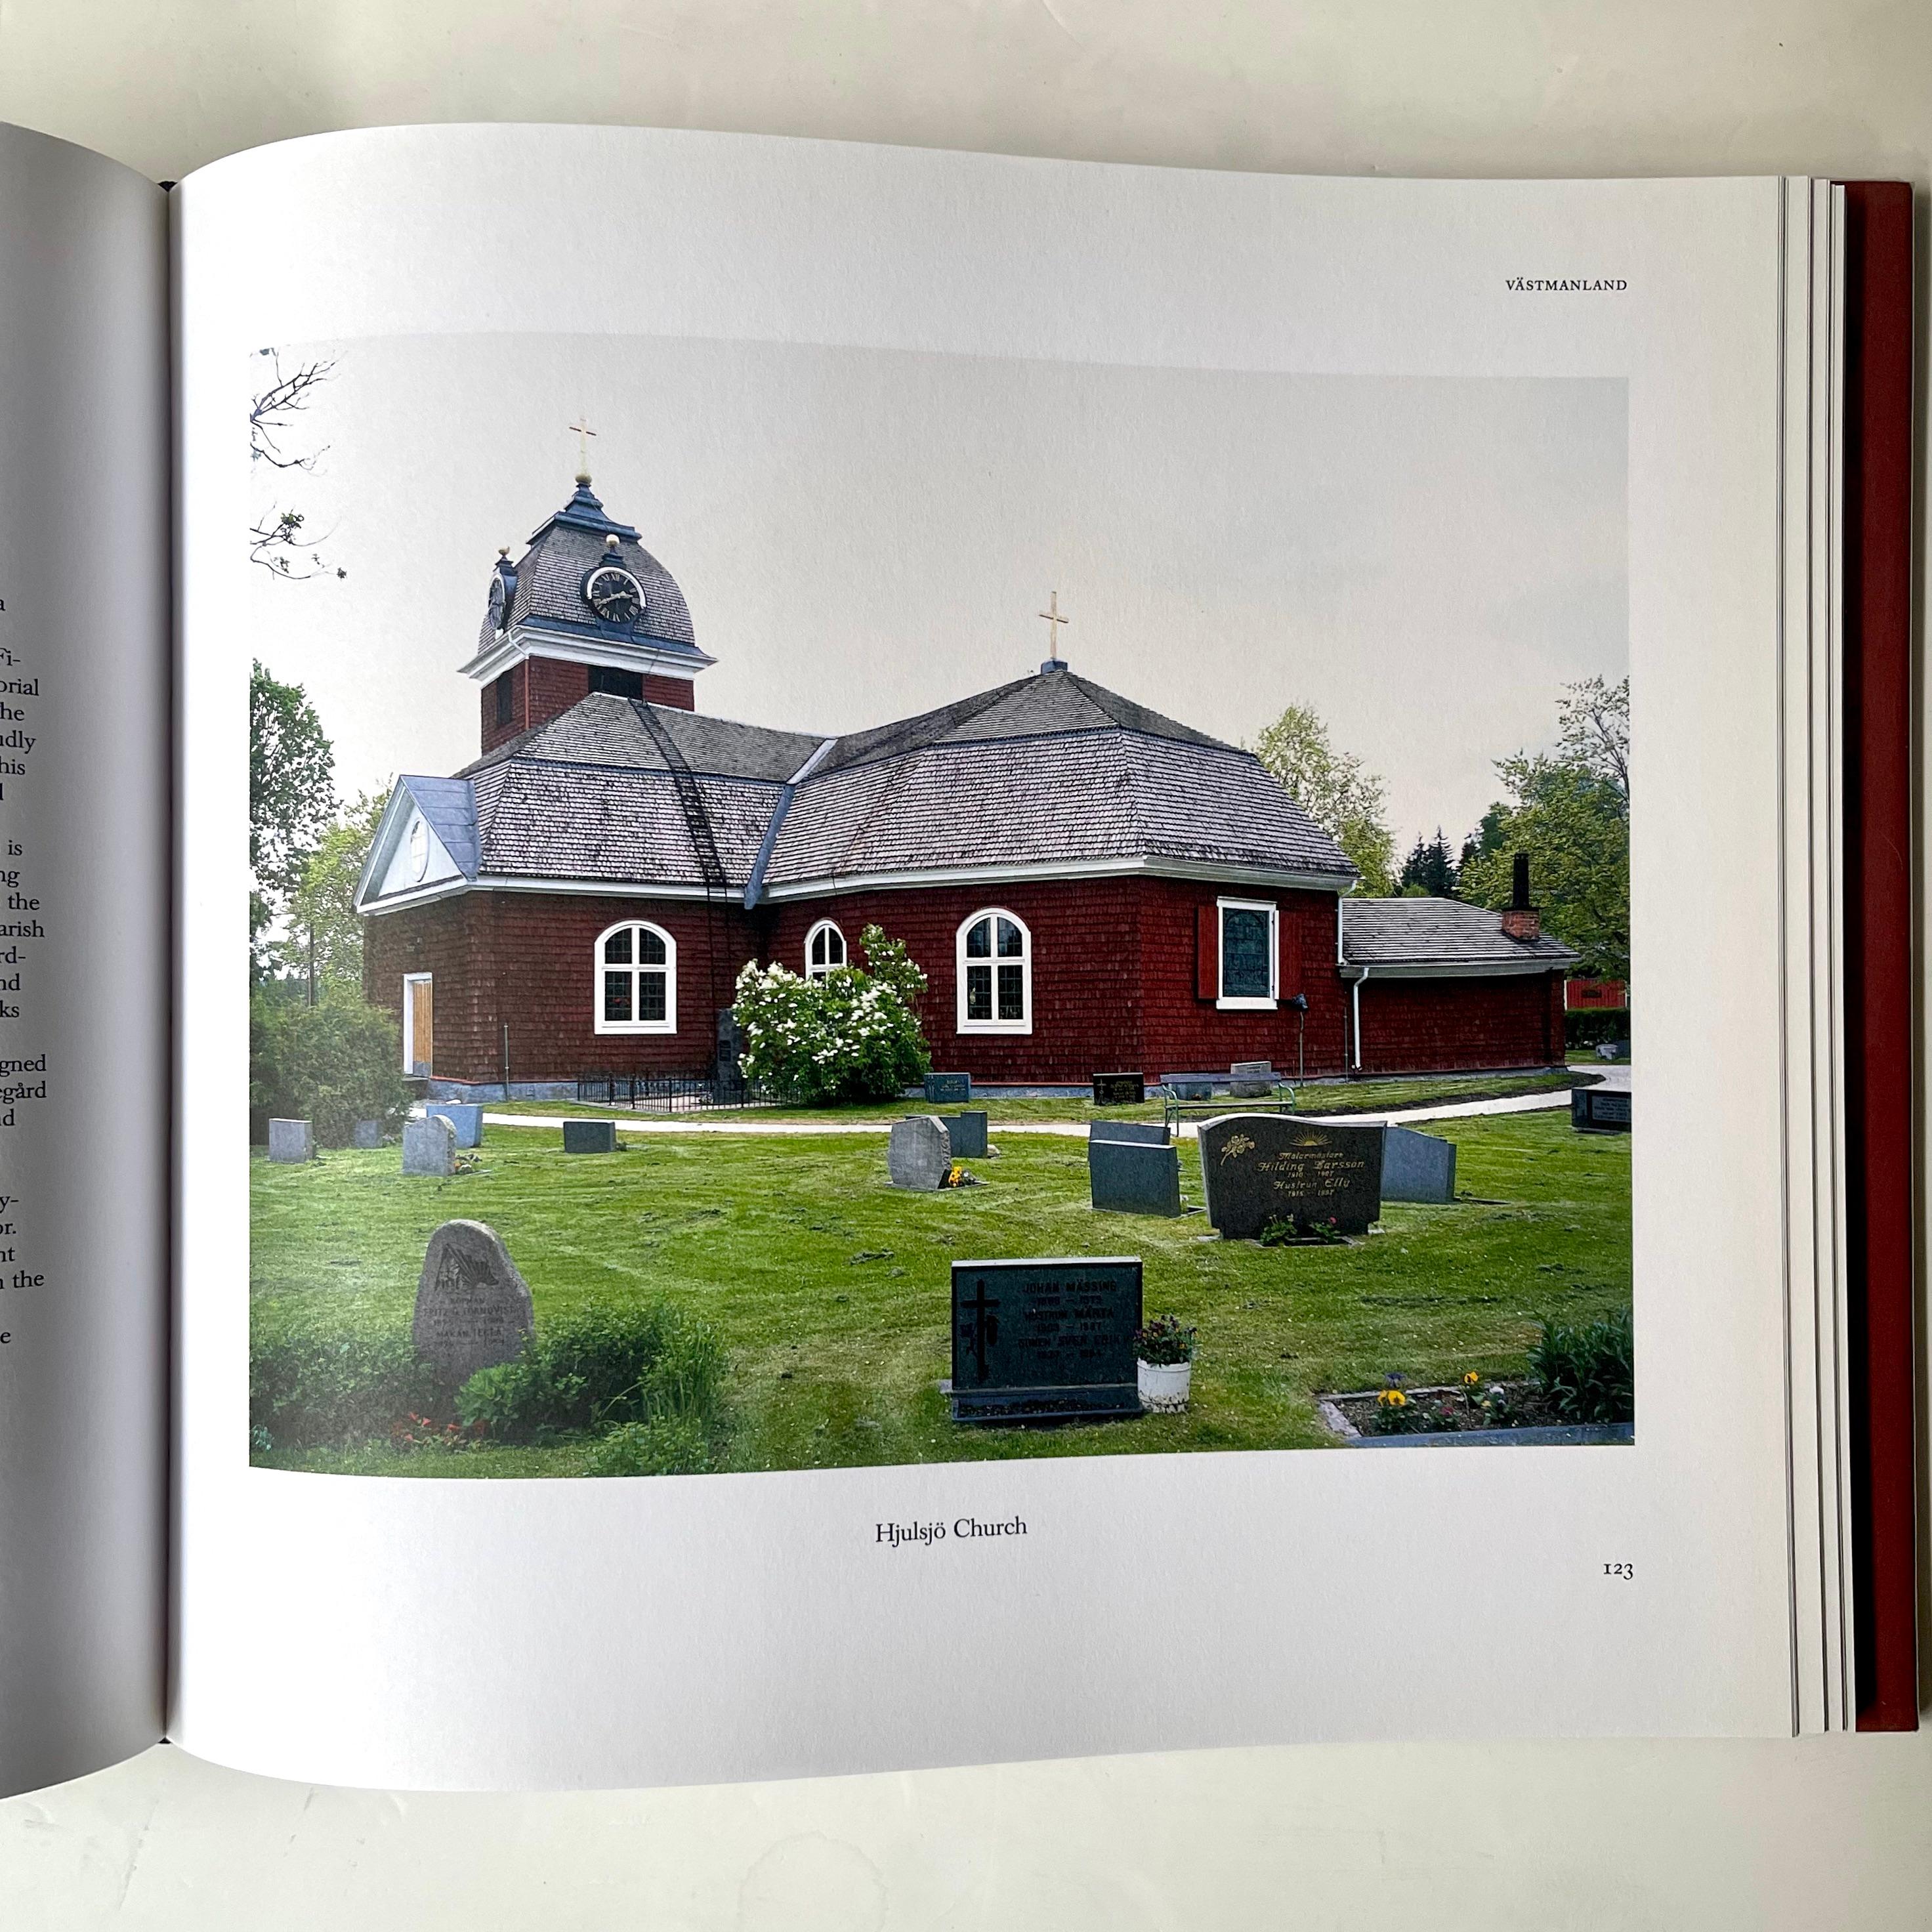 Rot gestrichene Holzhäuser haben seit langem einen besonderen Stellenwert in 
The Red Houses – Margareta Kjellin, 1. Auflage 2005

schwedischen Bautradition und haben das Bild der schwedischen Baukultur entscheidend mitgeprägt. Rote Häuser und die